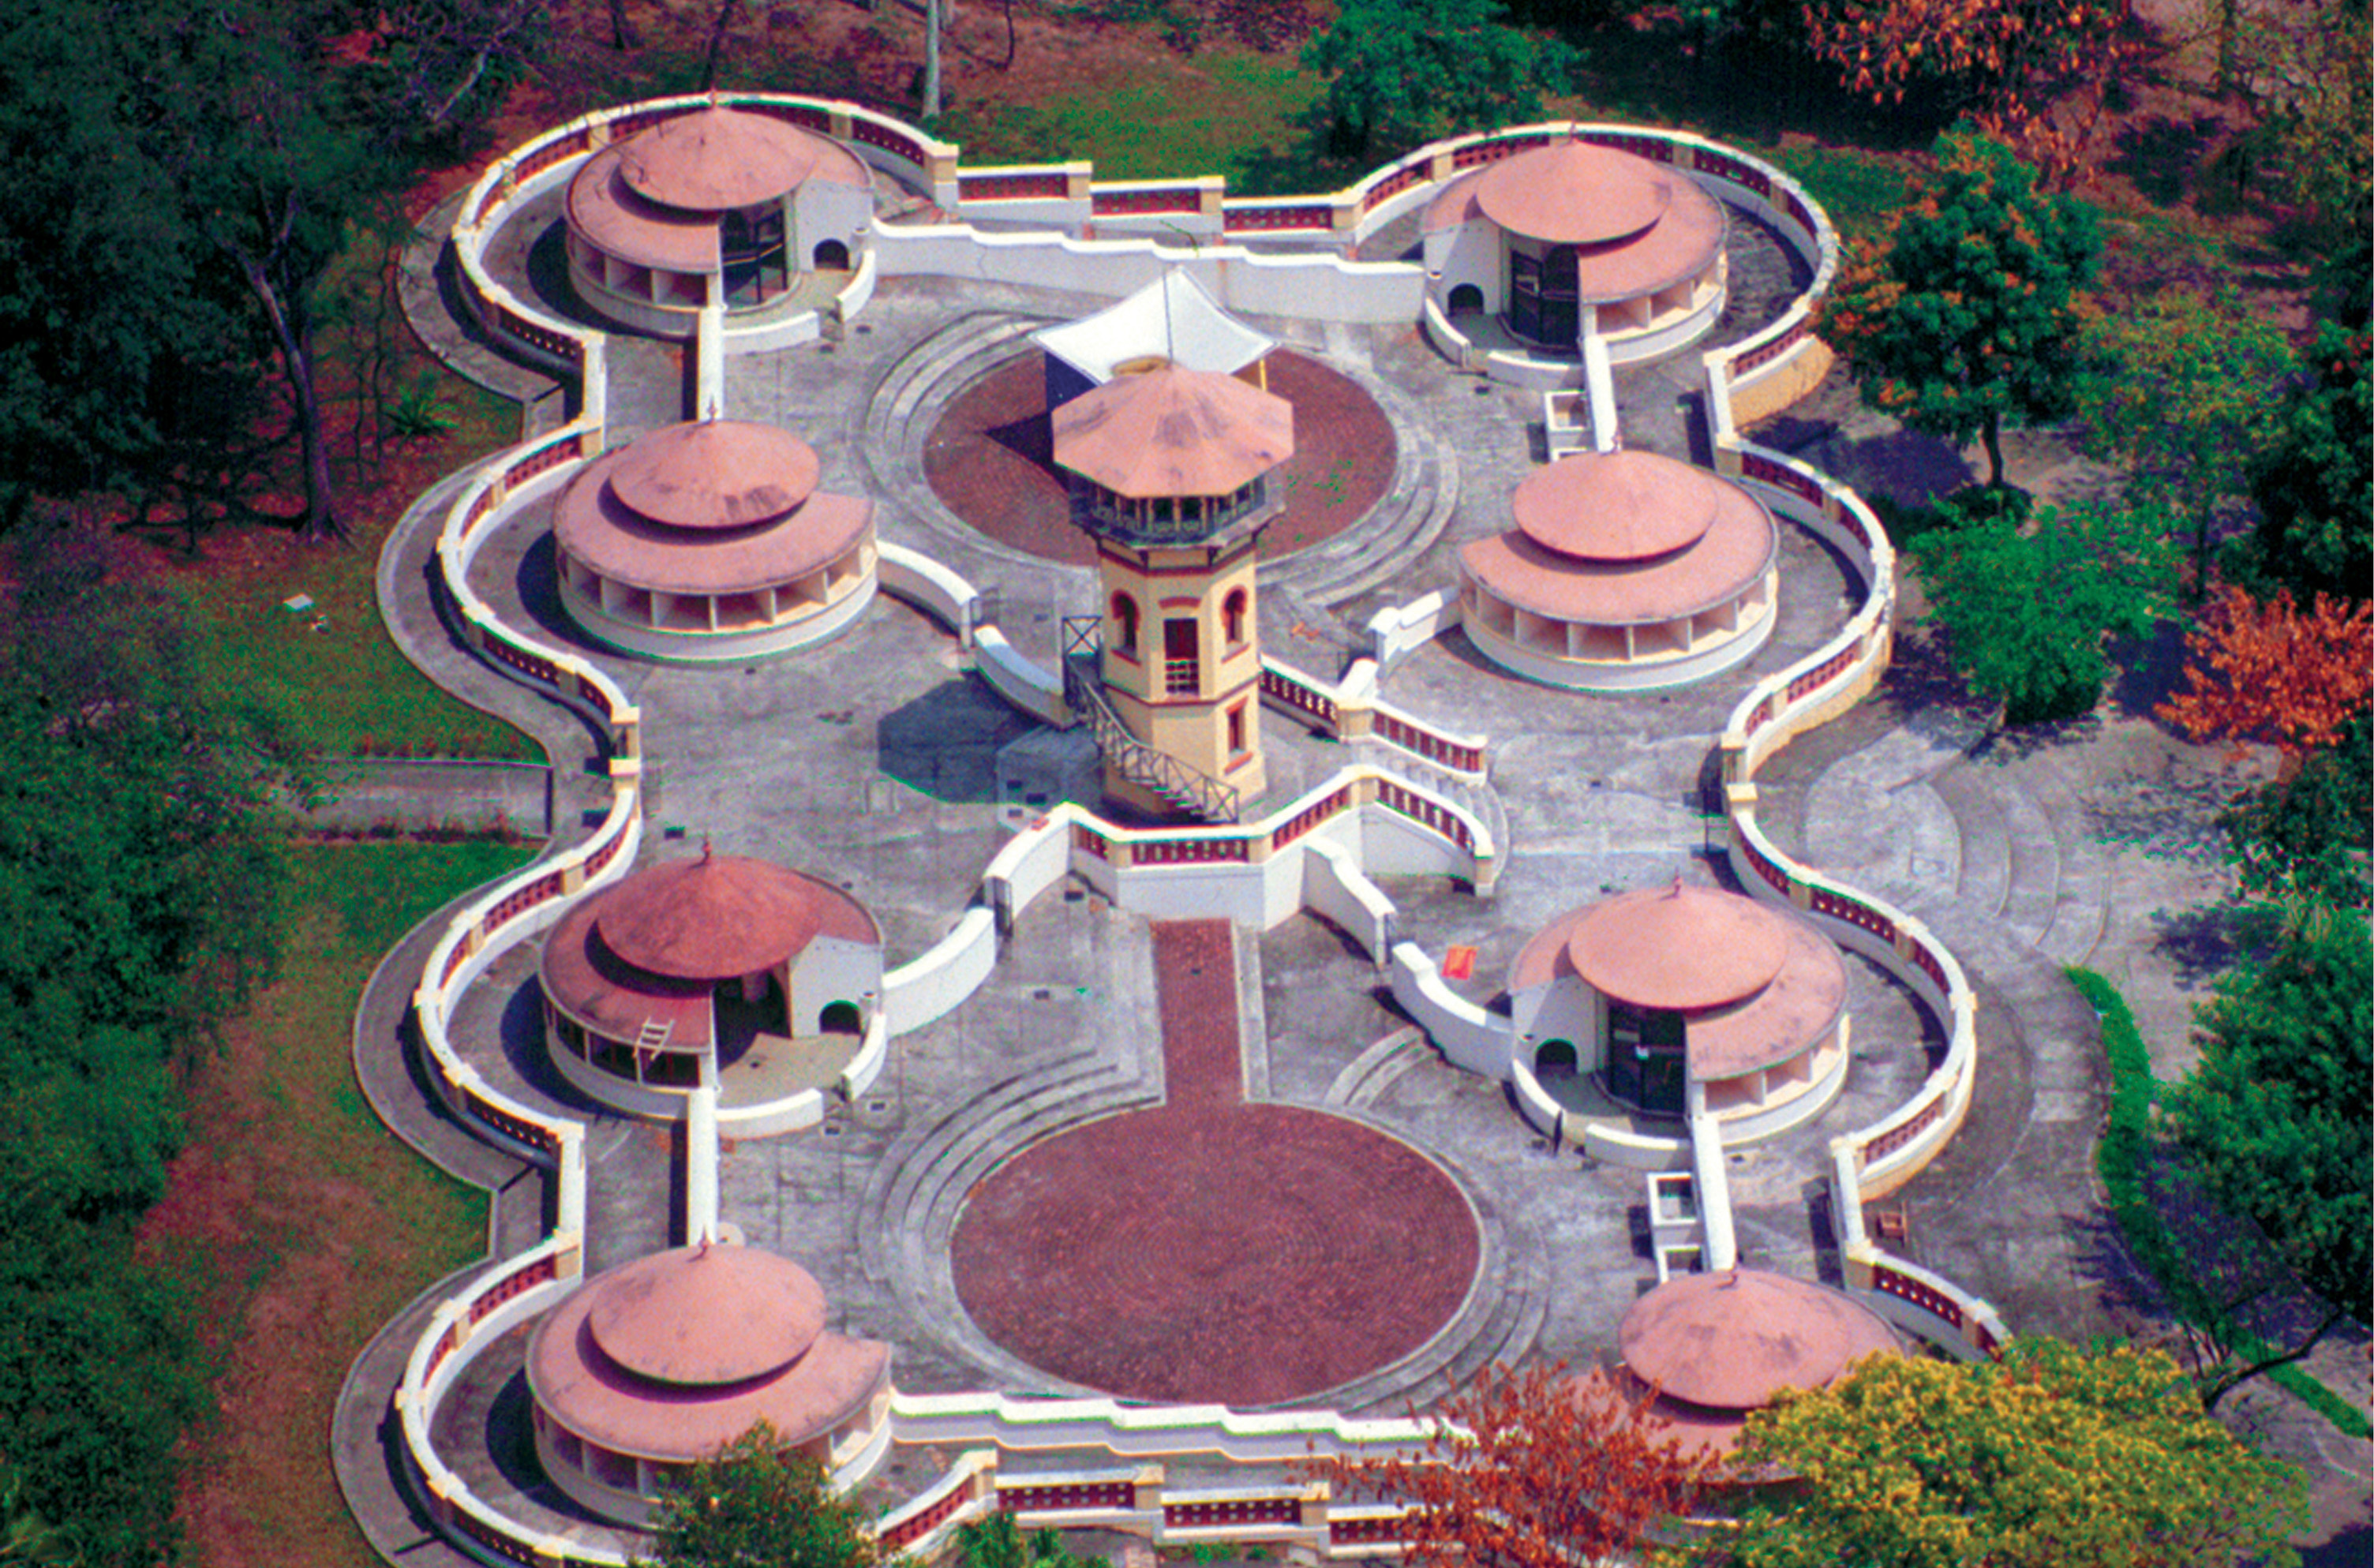 Foto aérea mostra o pombal com a torre central, ao redor da qual estão dispostos 6 módulos circulares